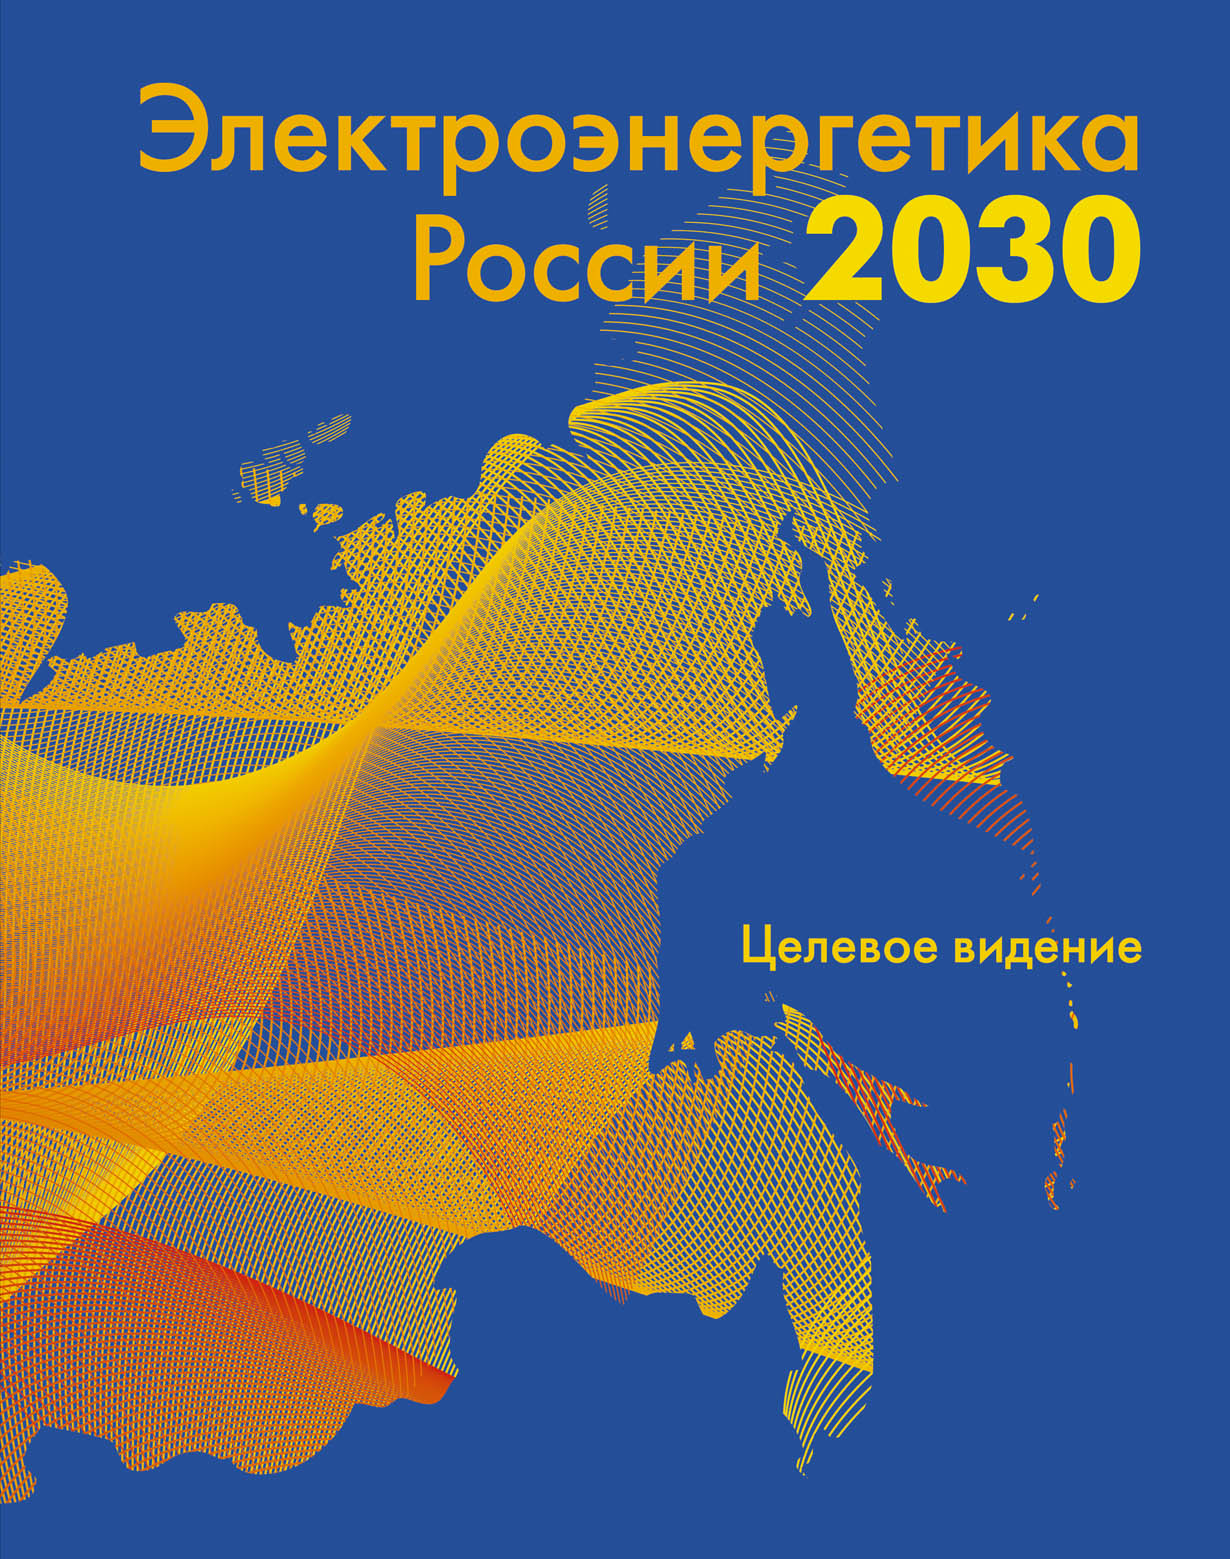 Электроэнергетика России 2030 обложка.